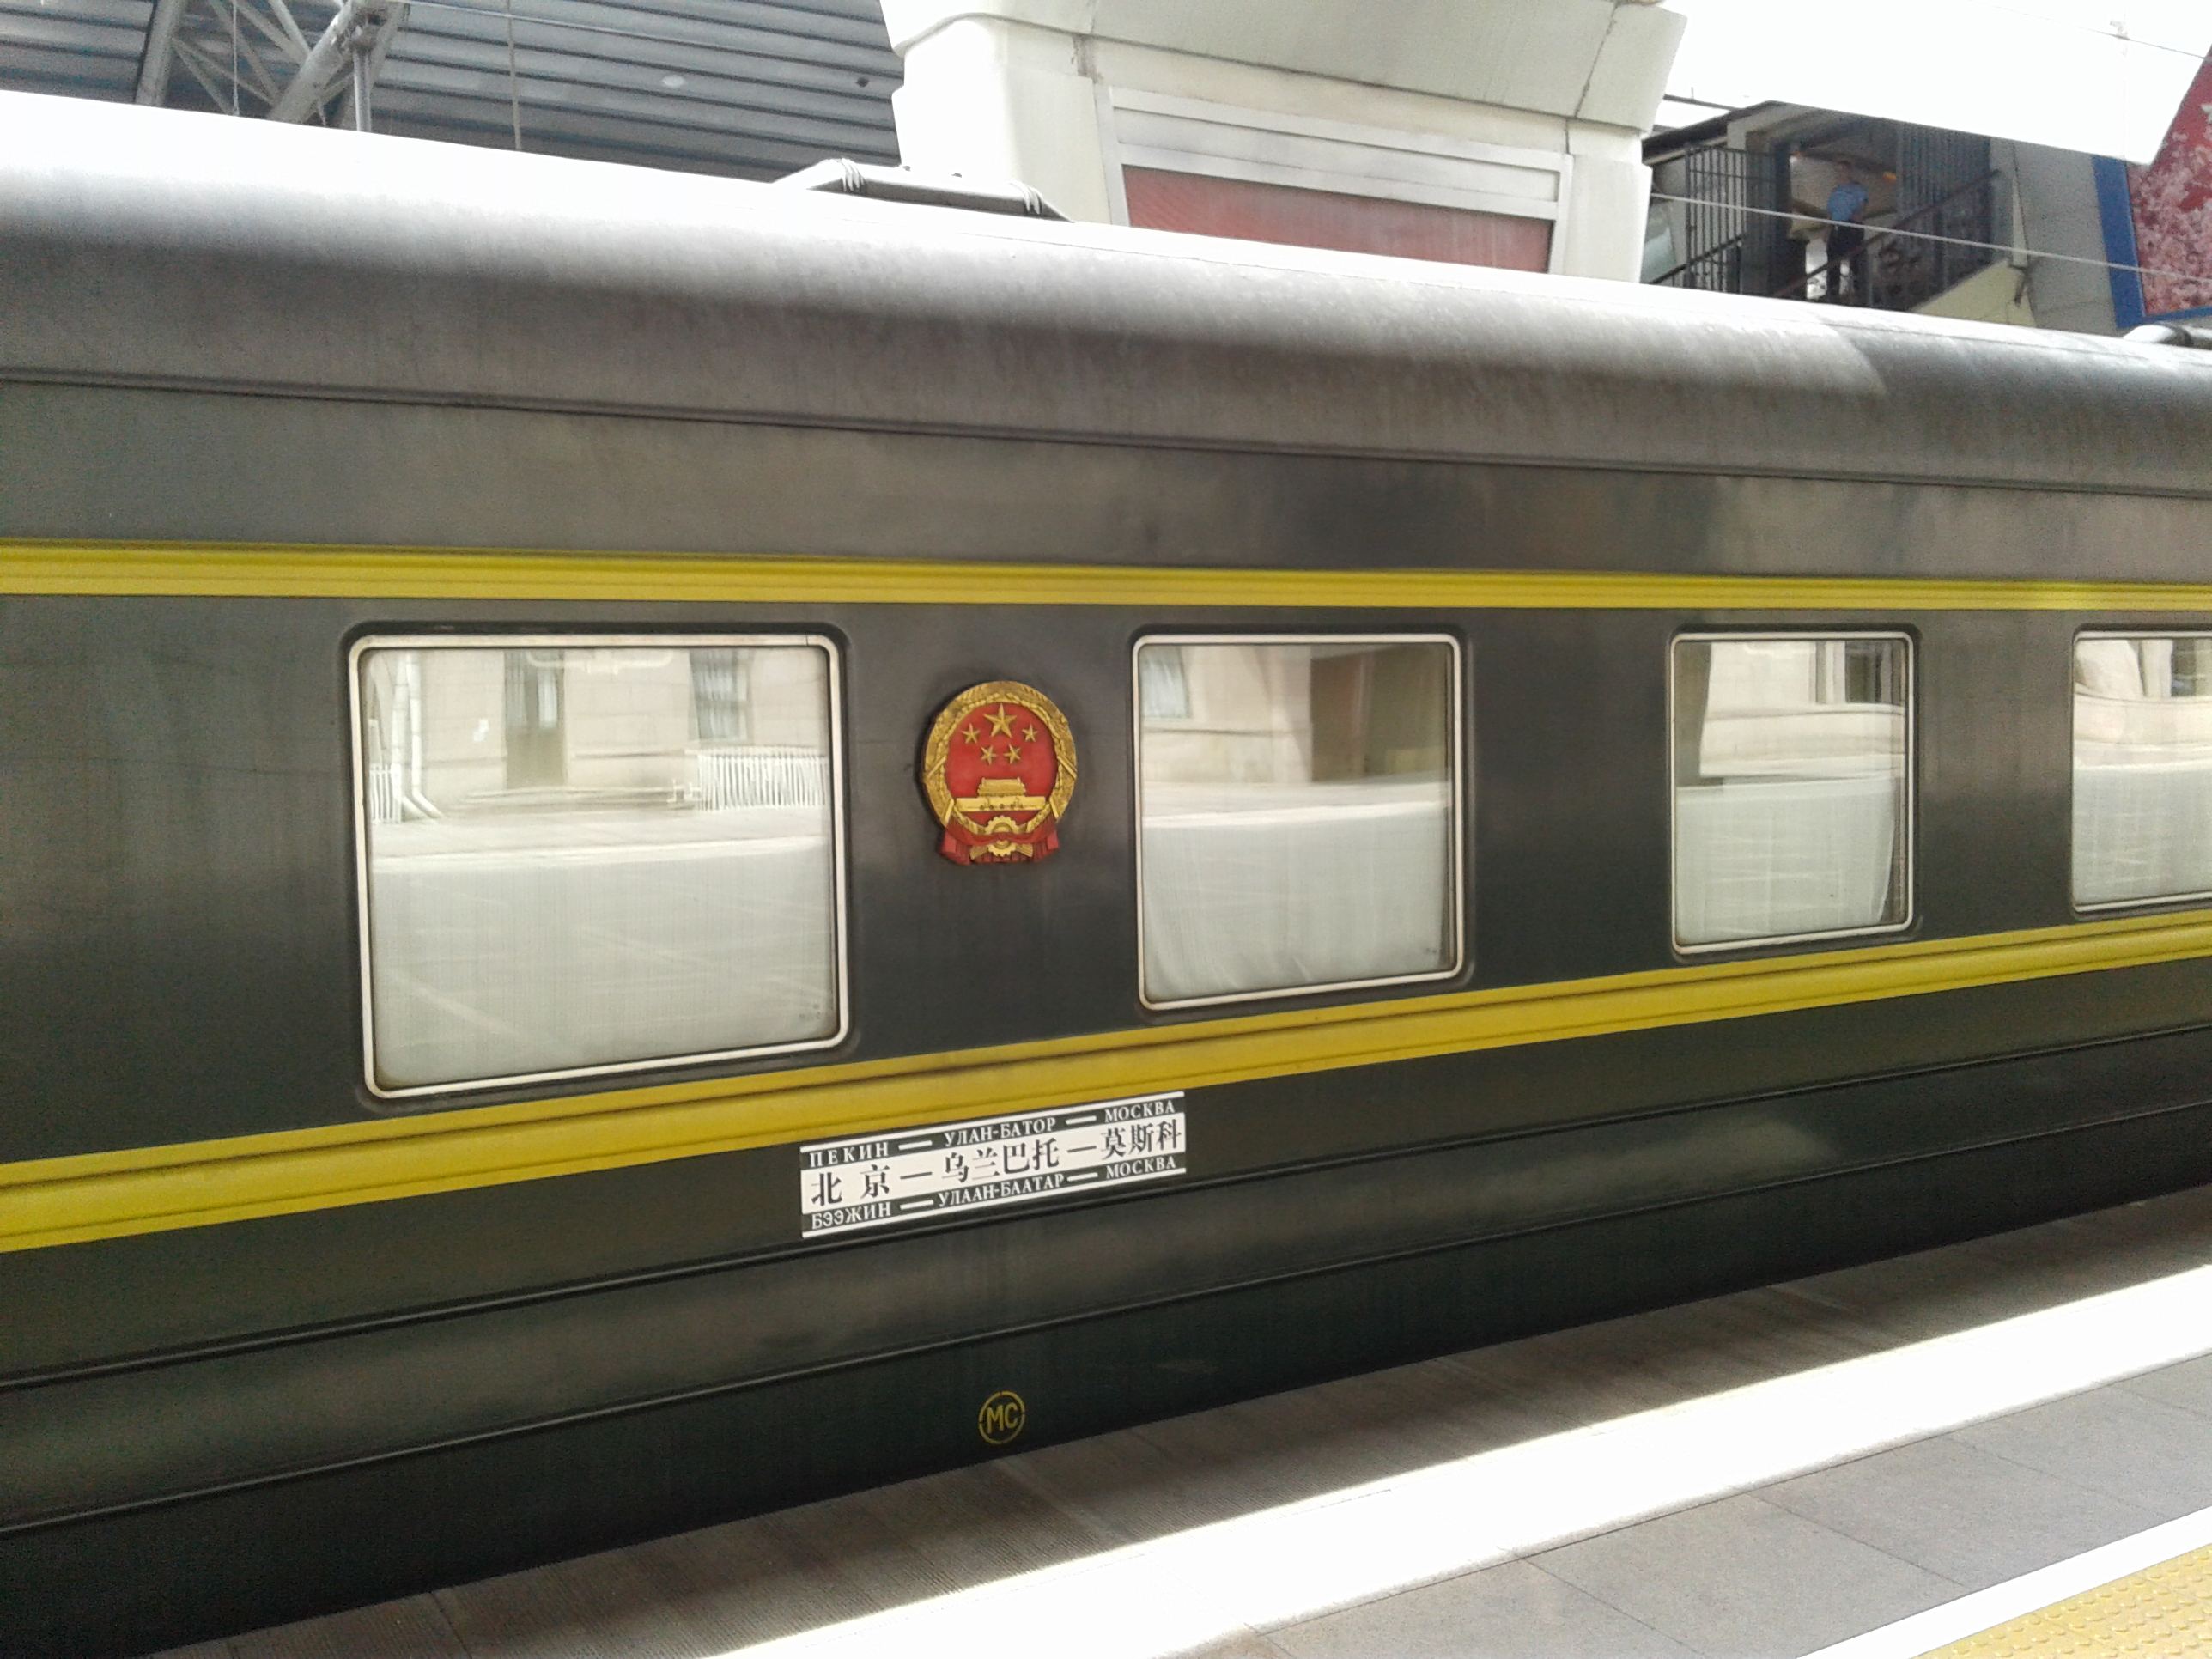 Train to Moscow, via UB